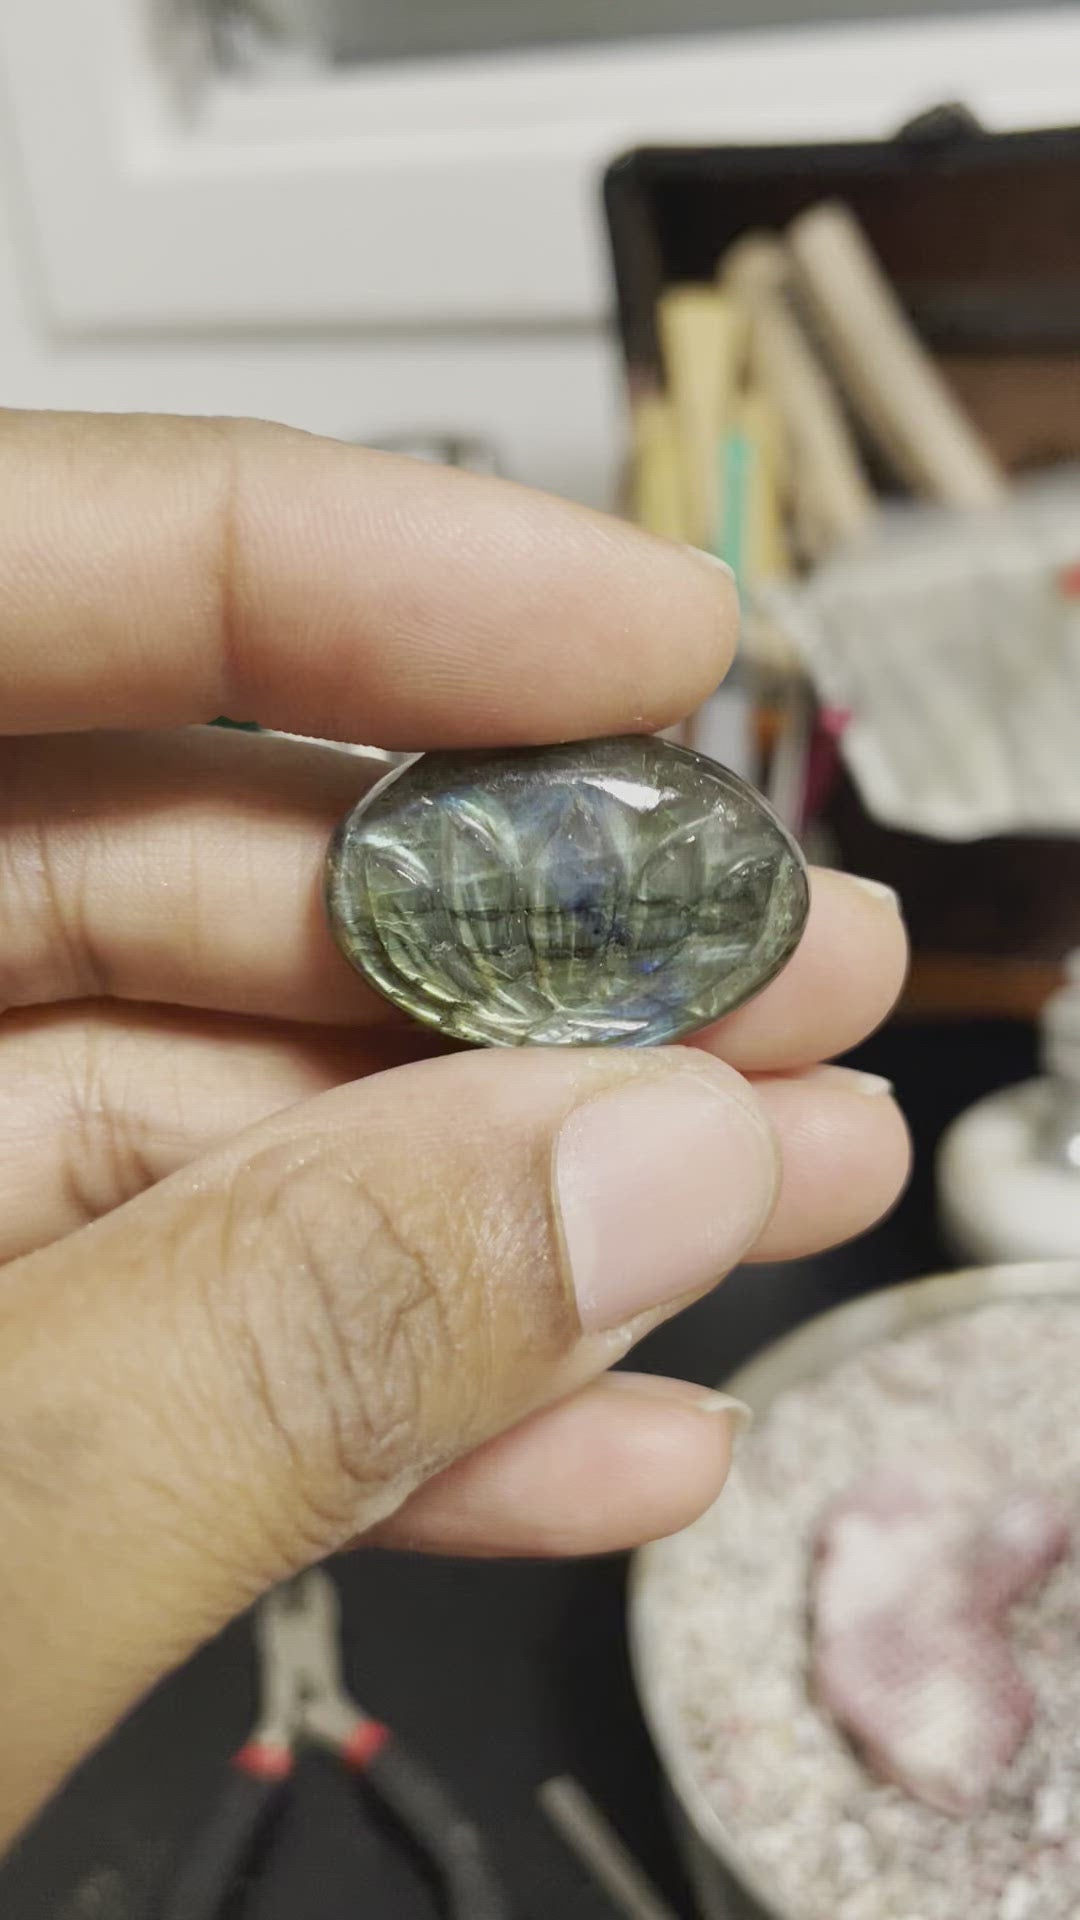 Lotus - Handmade Labradorite Crystal Ring